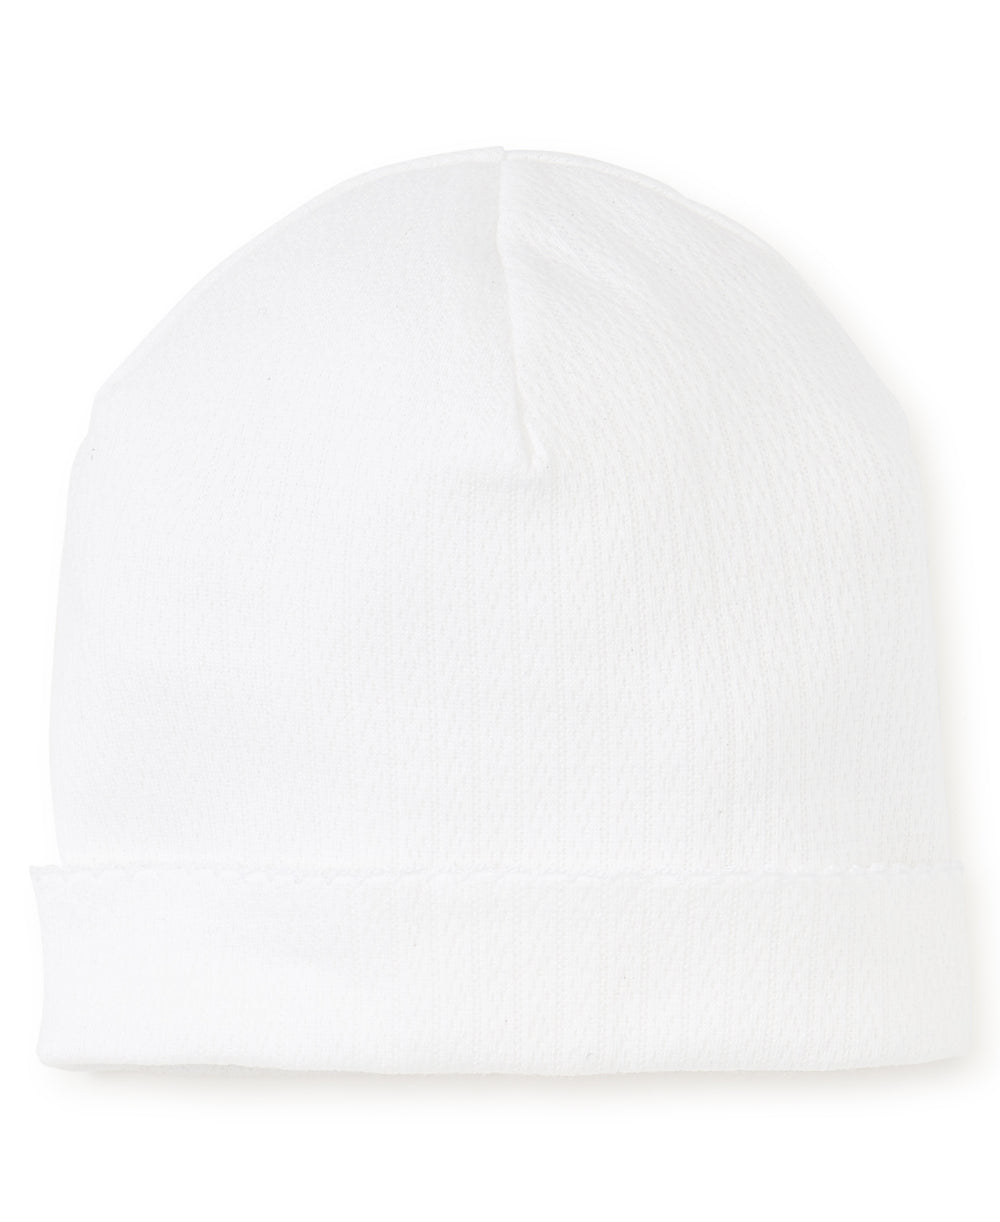 White Pointelle Baby Hat